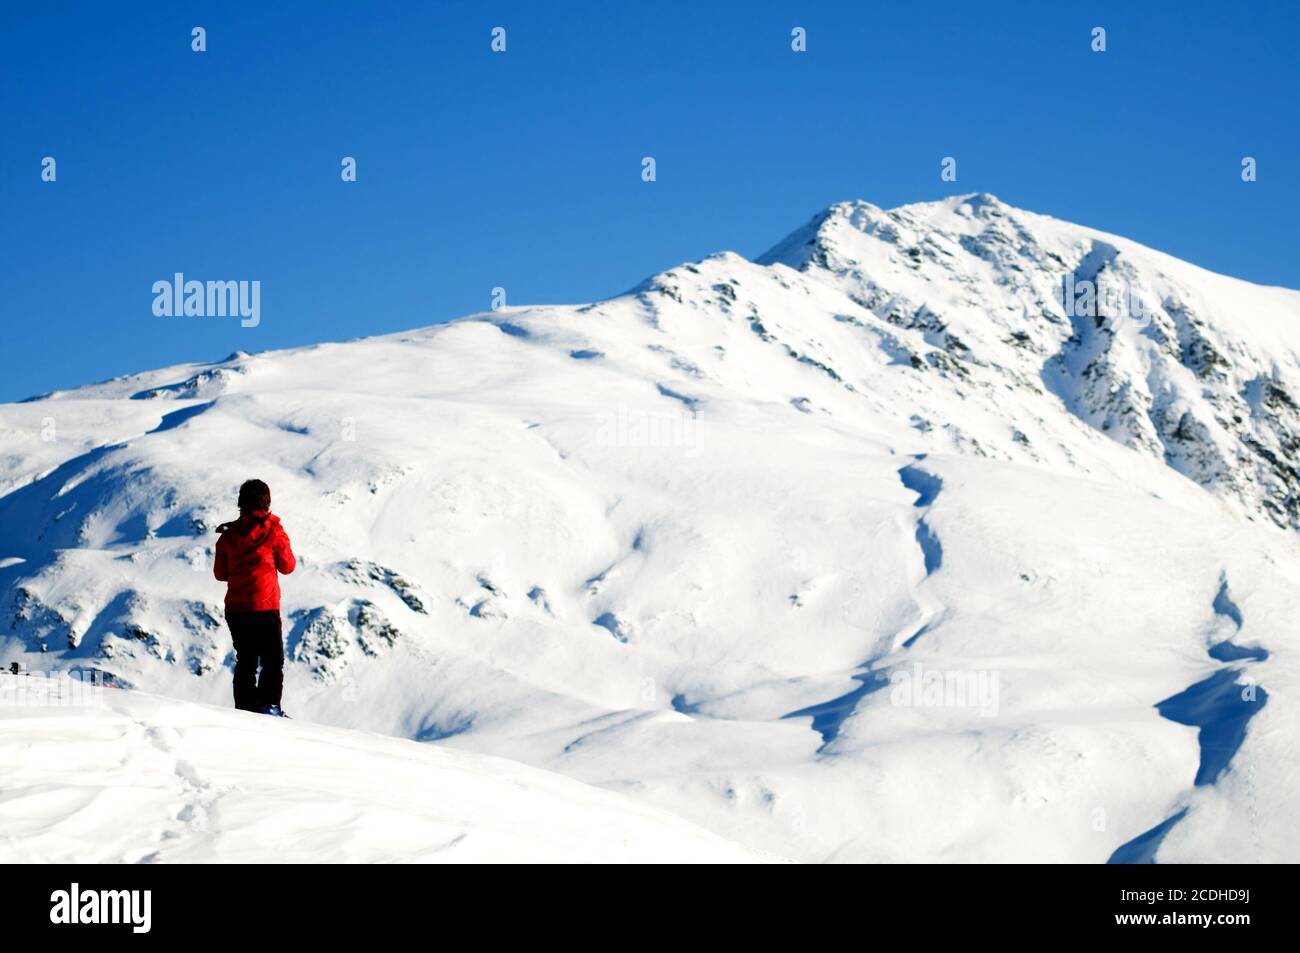 En hiver, escalade en montagne Banque D'Images